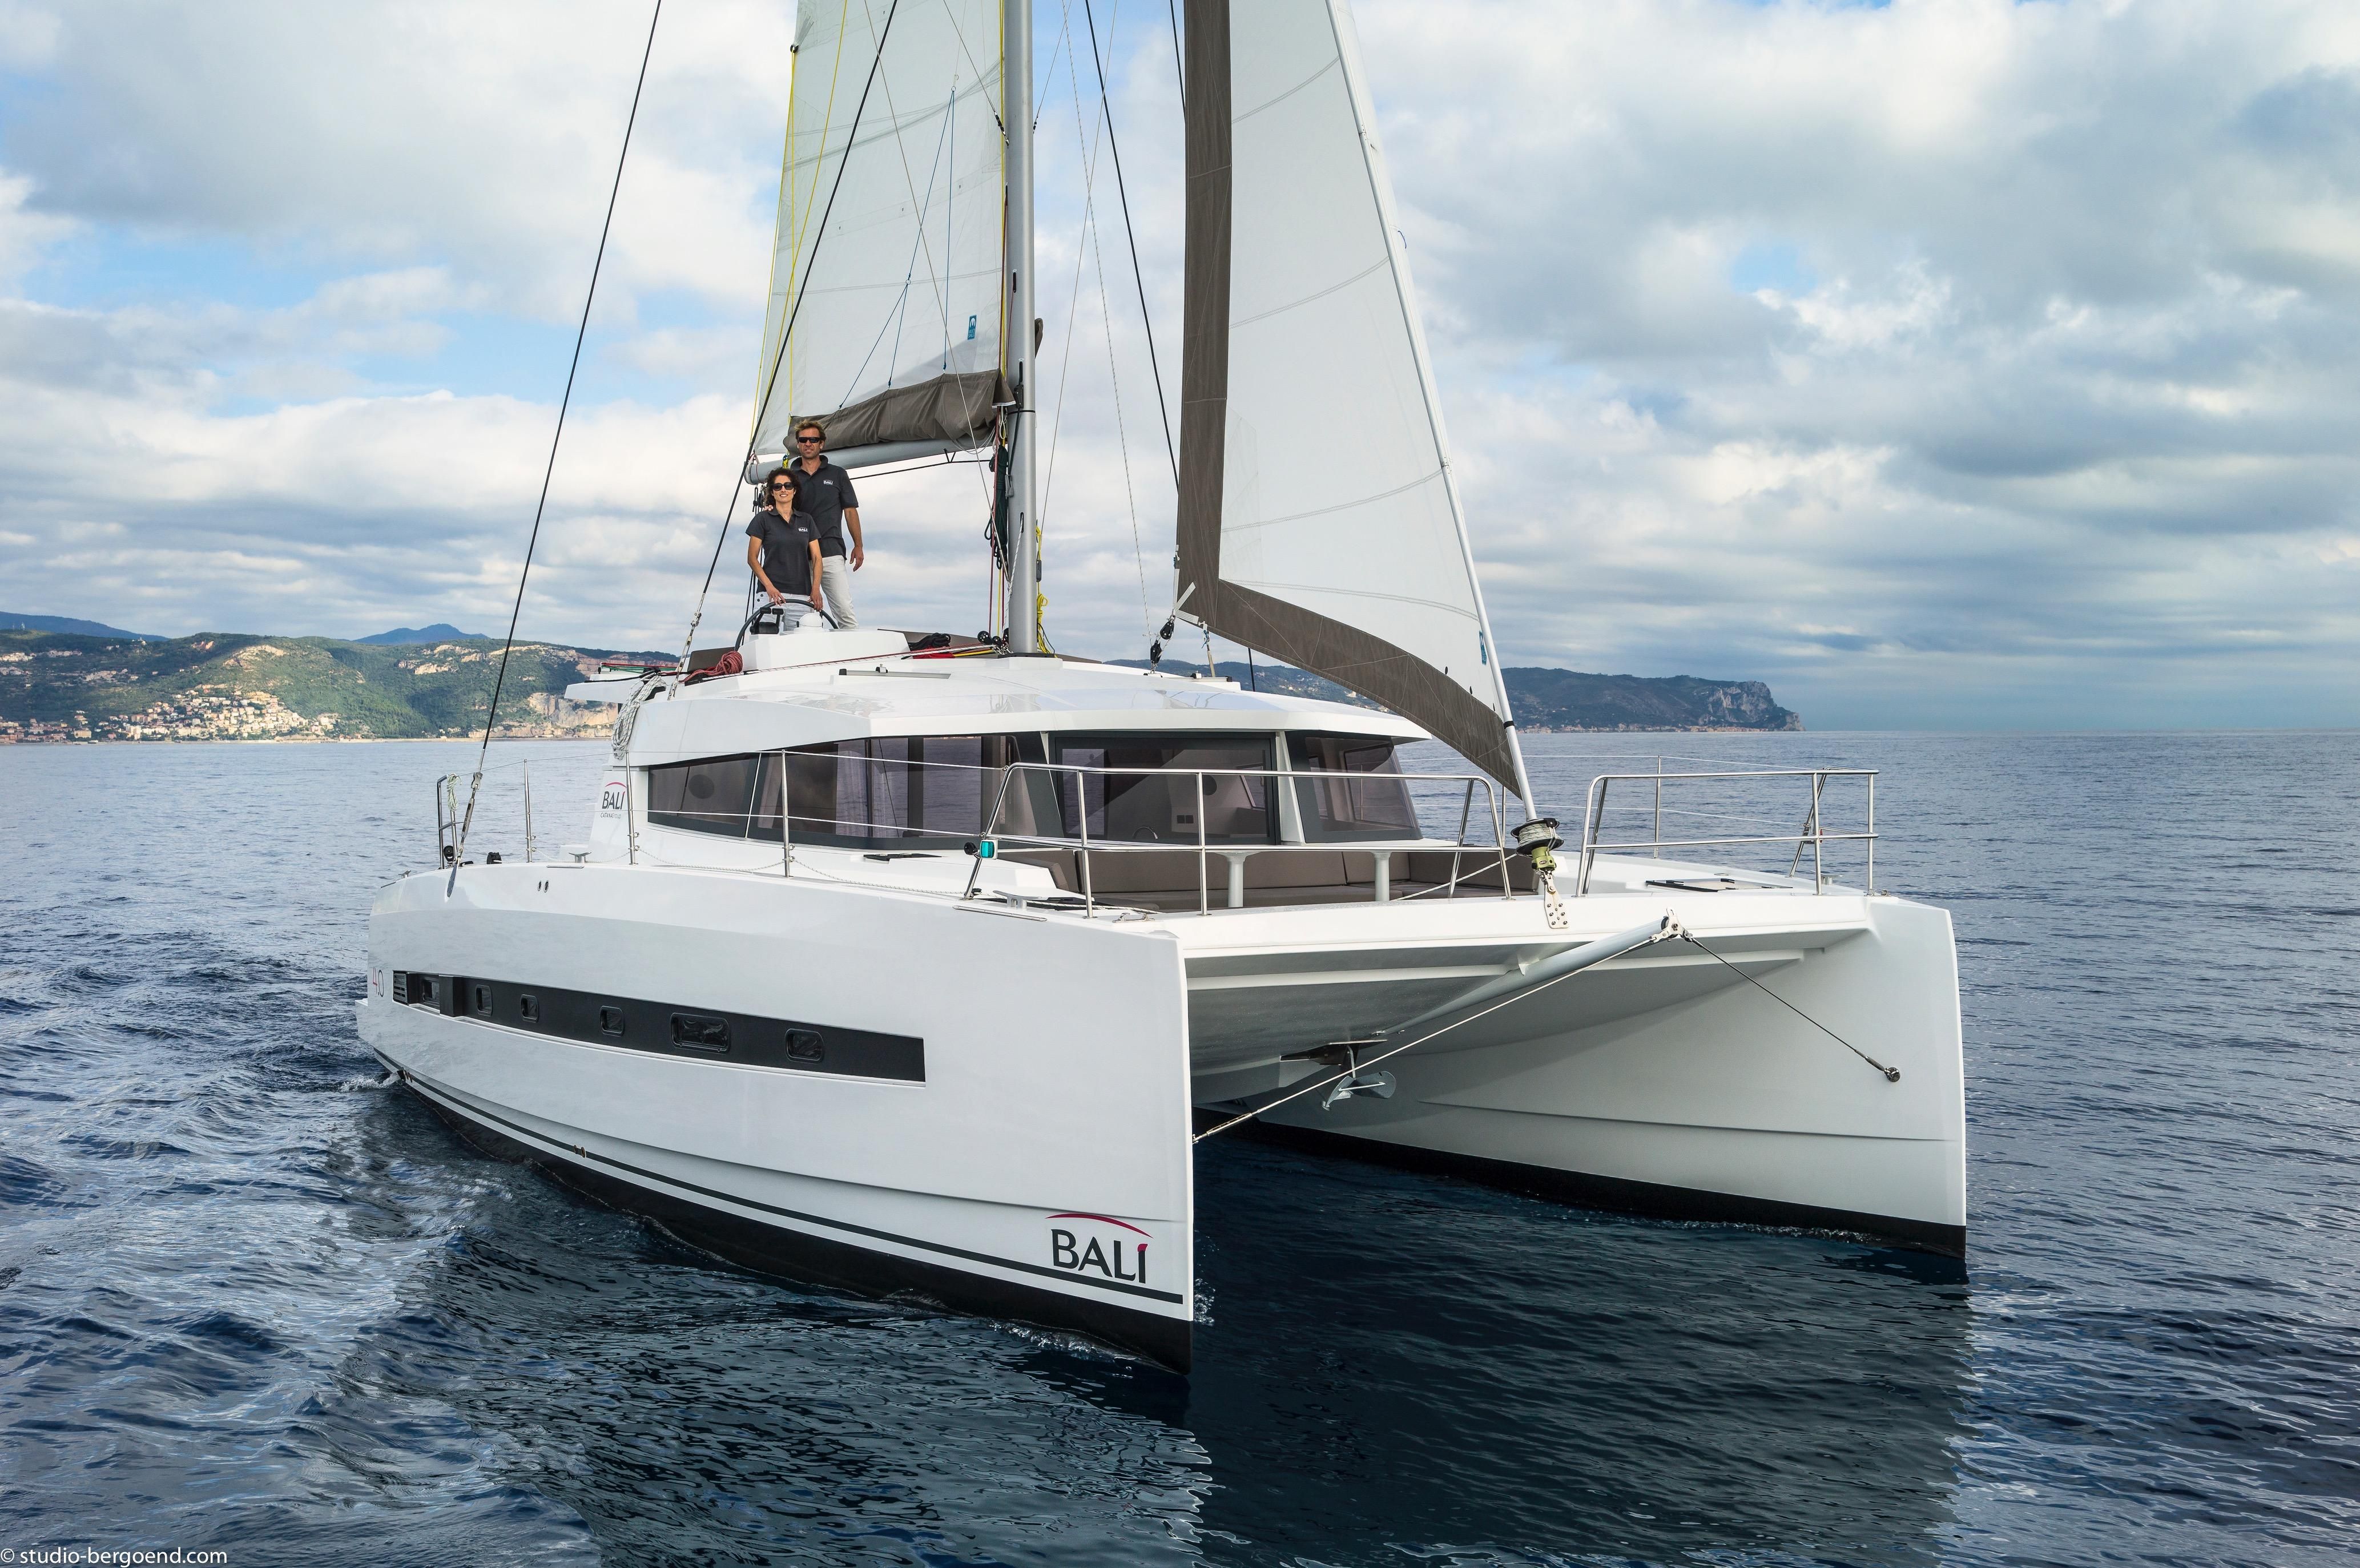 2021 Bali 4.1 Catamaran for sale - YachtWorld